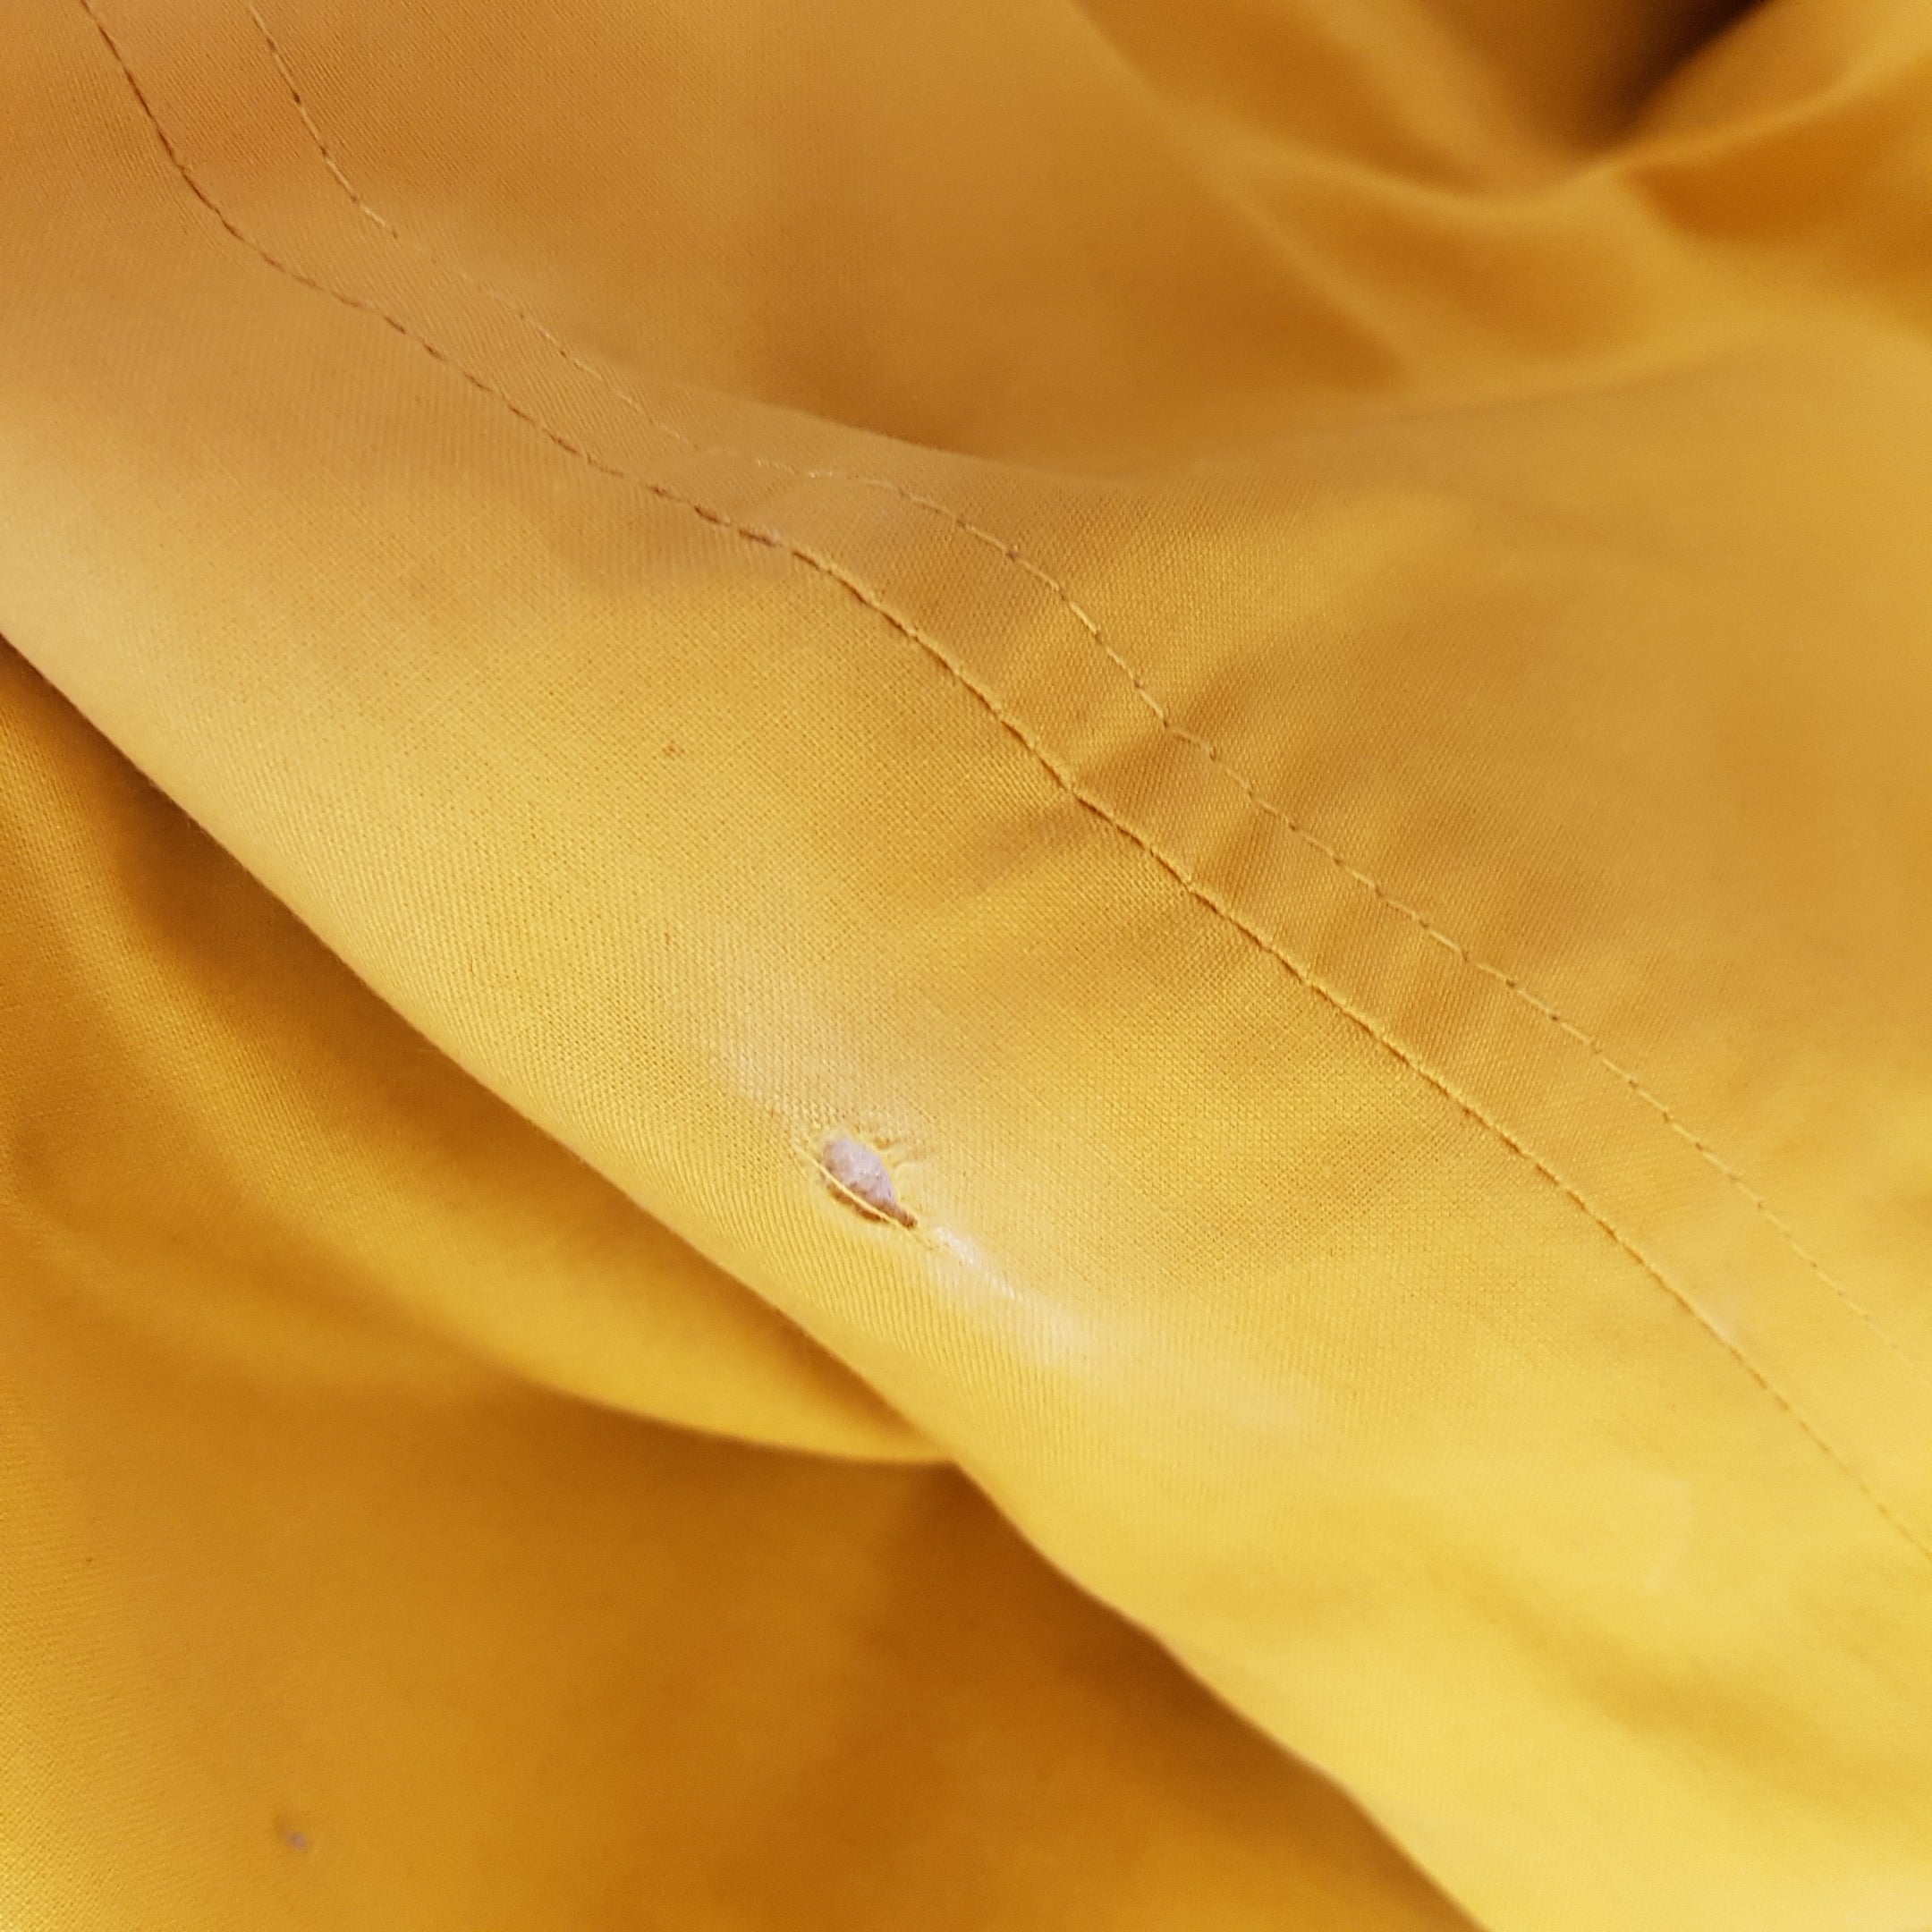 Burberry Rare Yellow Trench Coat